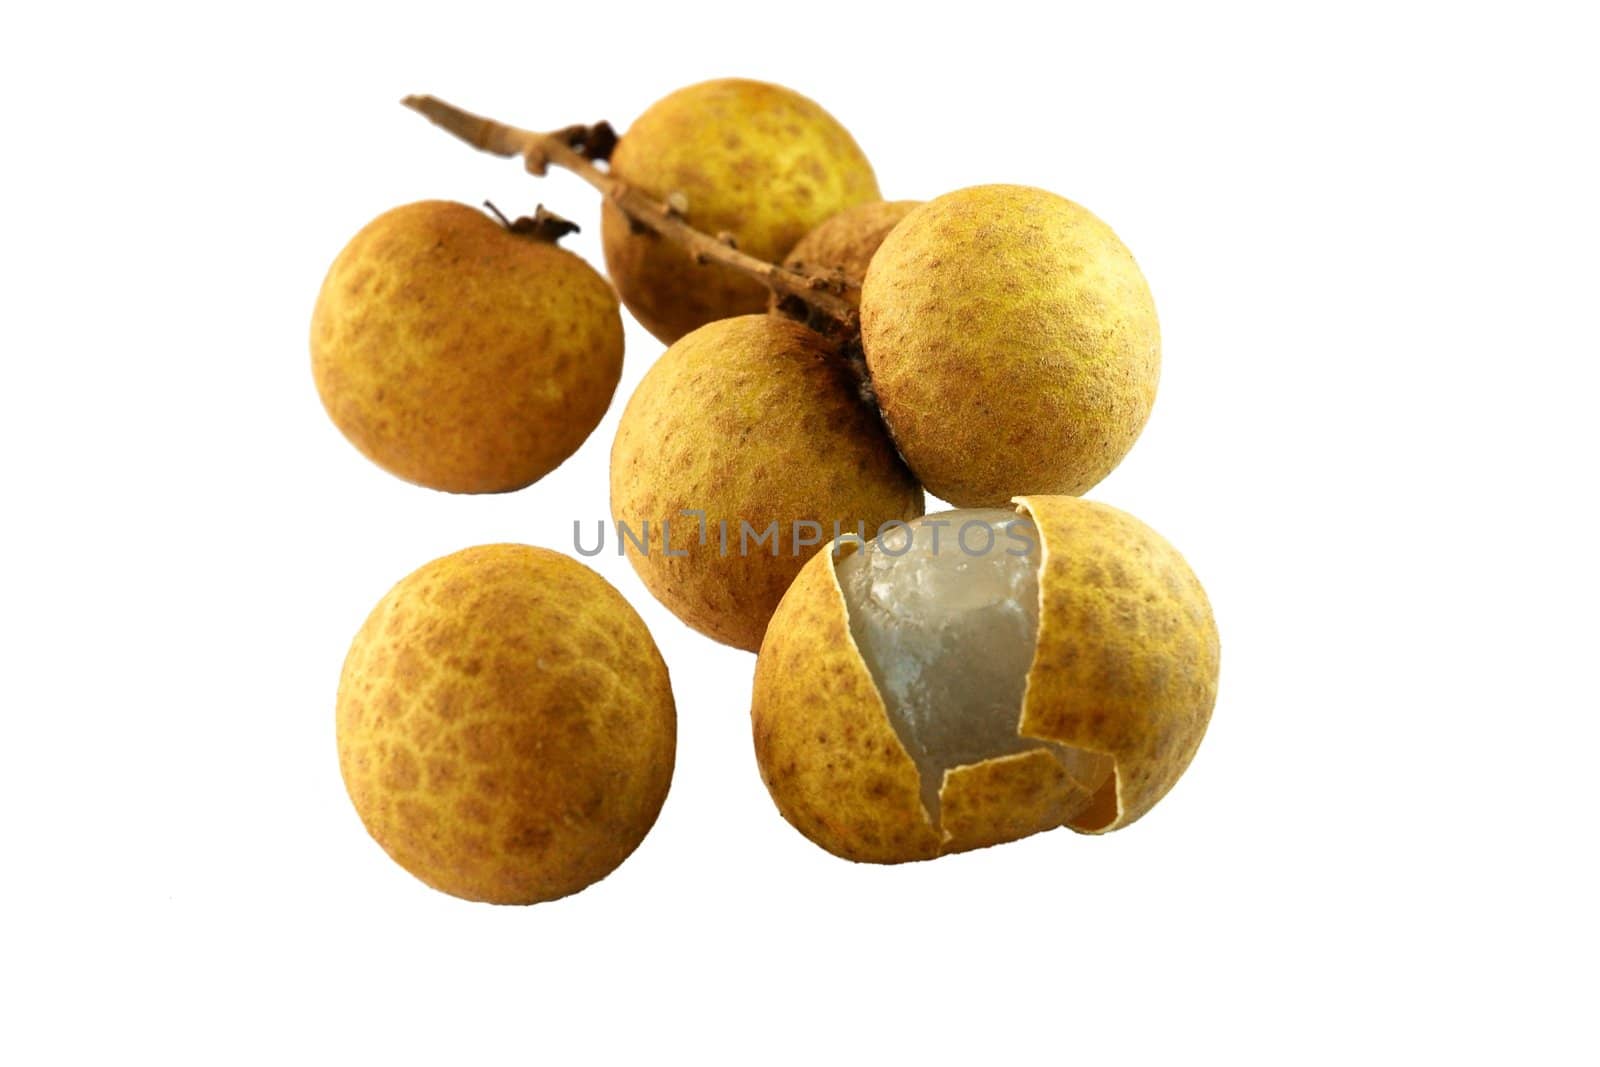 Asian exotic fruit � Longan or LamYai isolated on white